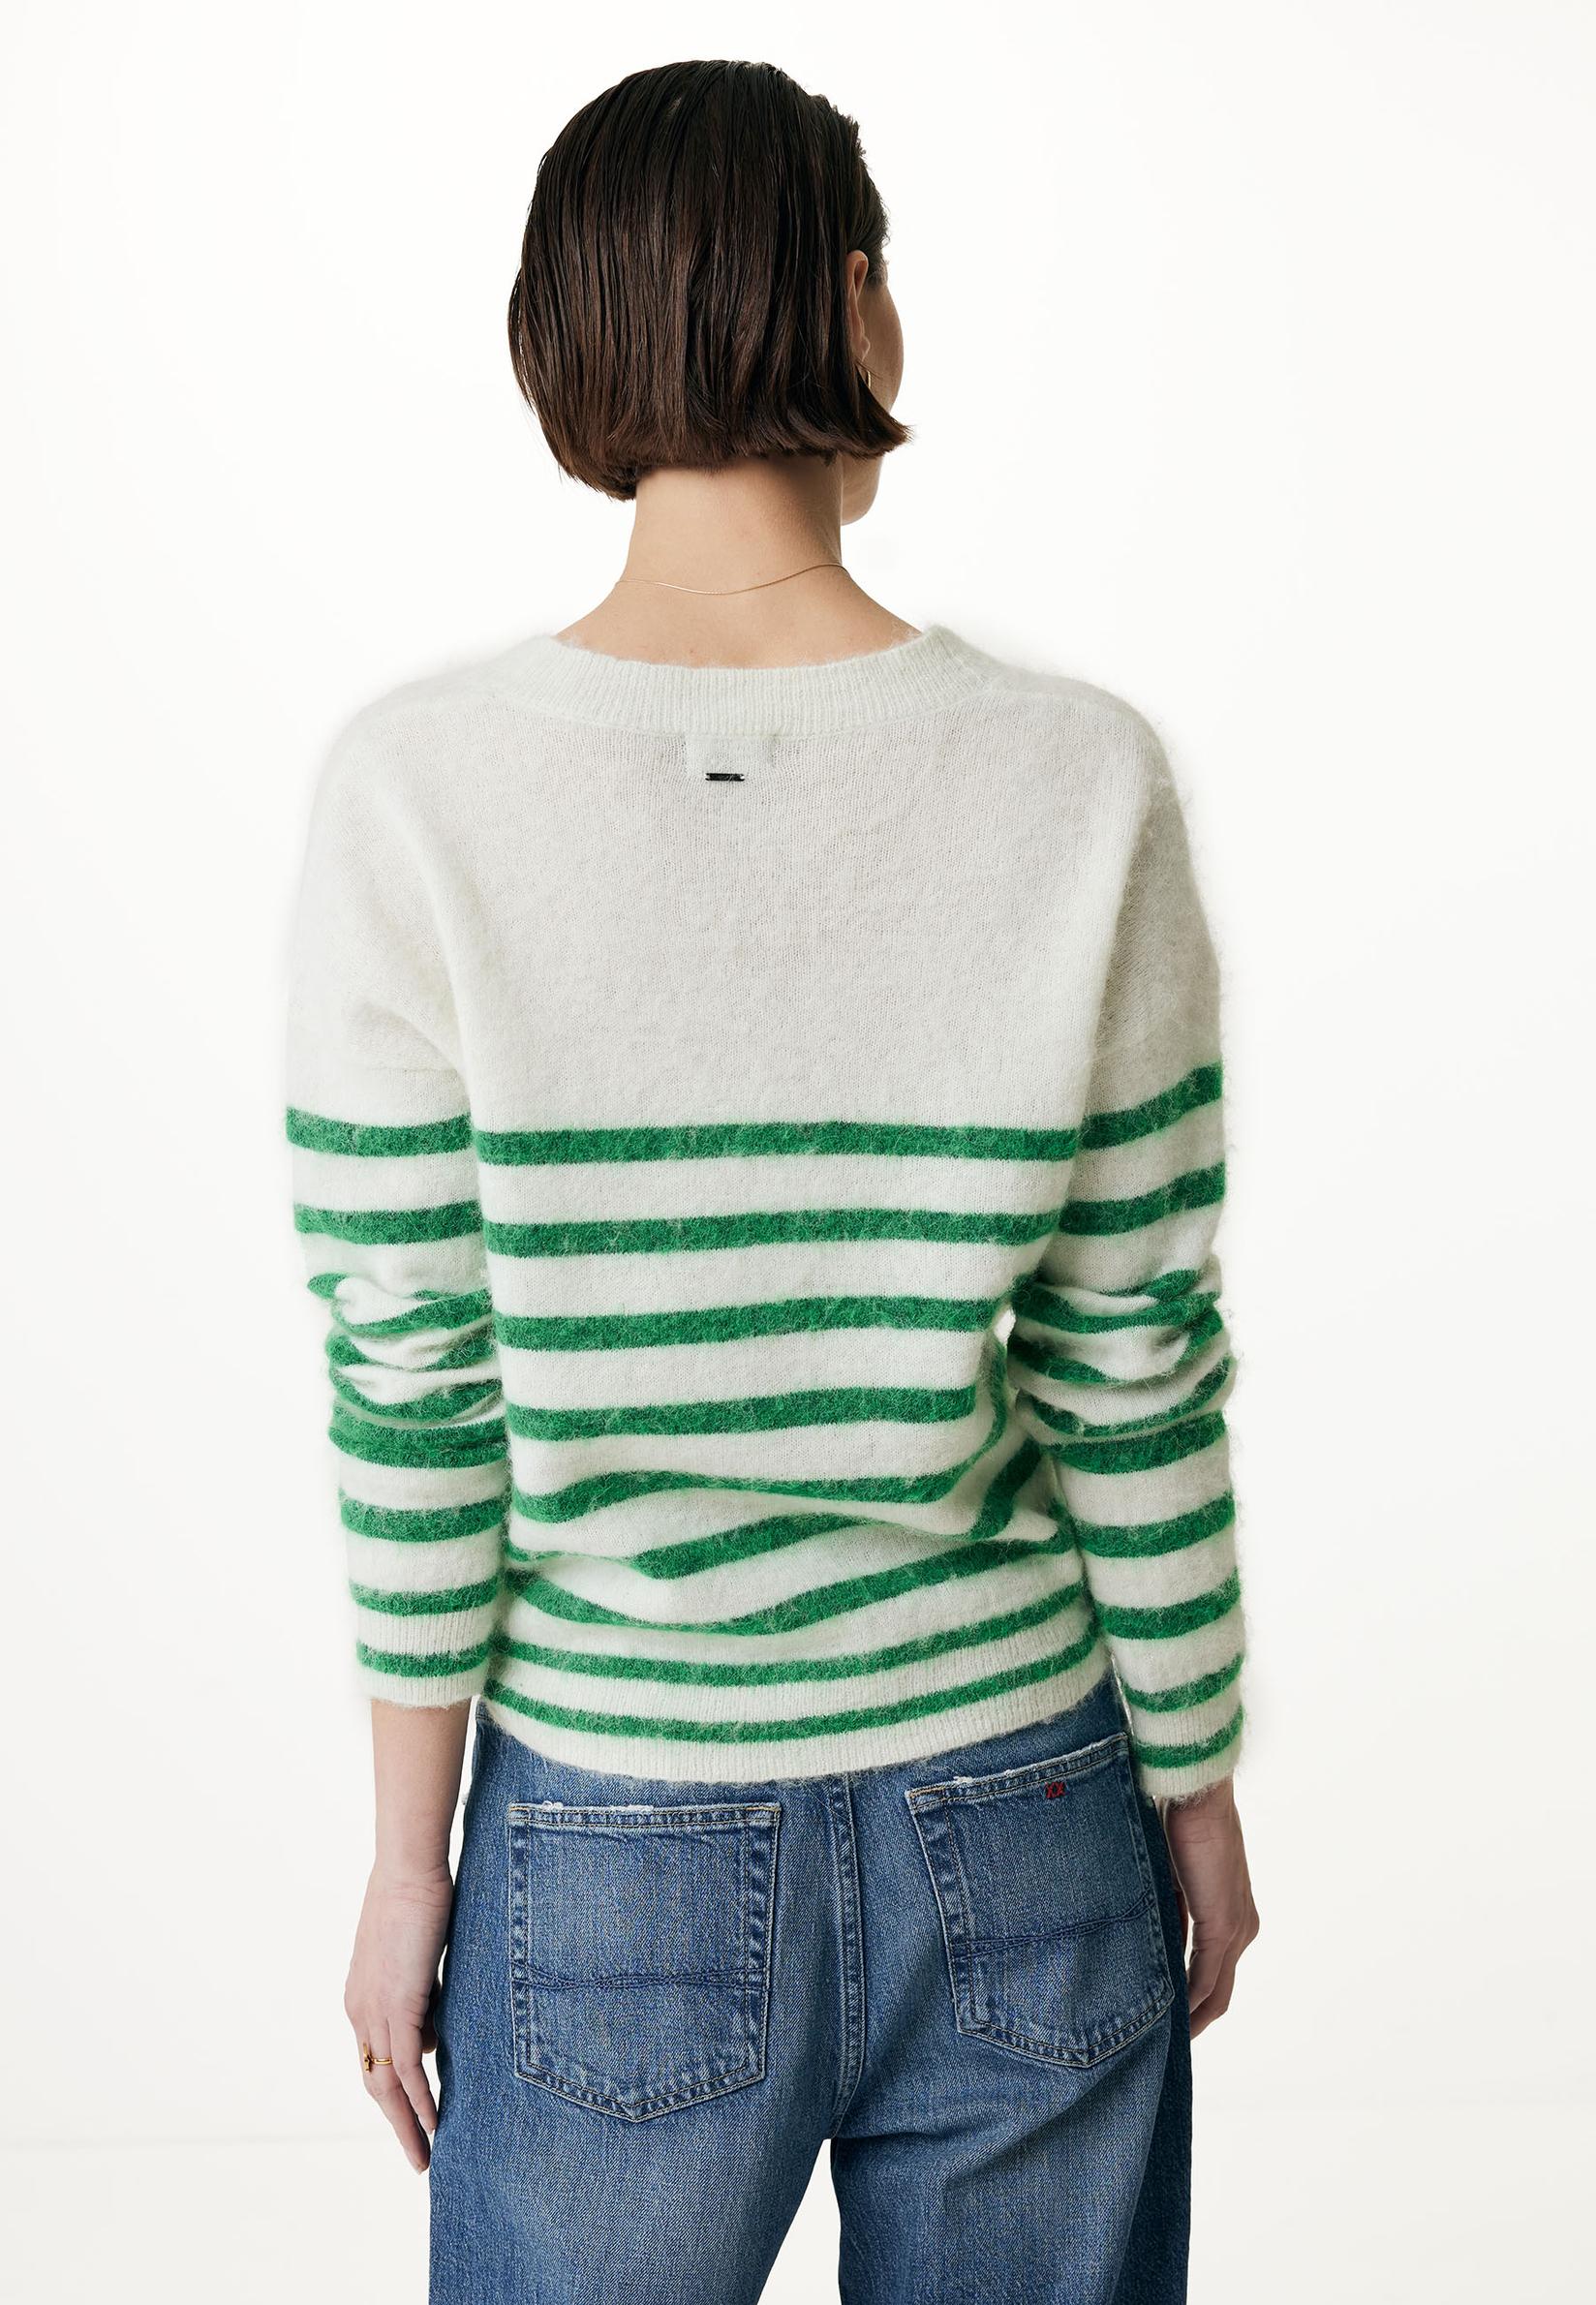 Selected image for MEXX Ženski džemper na pruge zeleno-beli